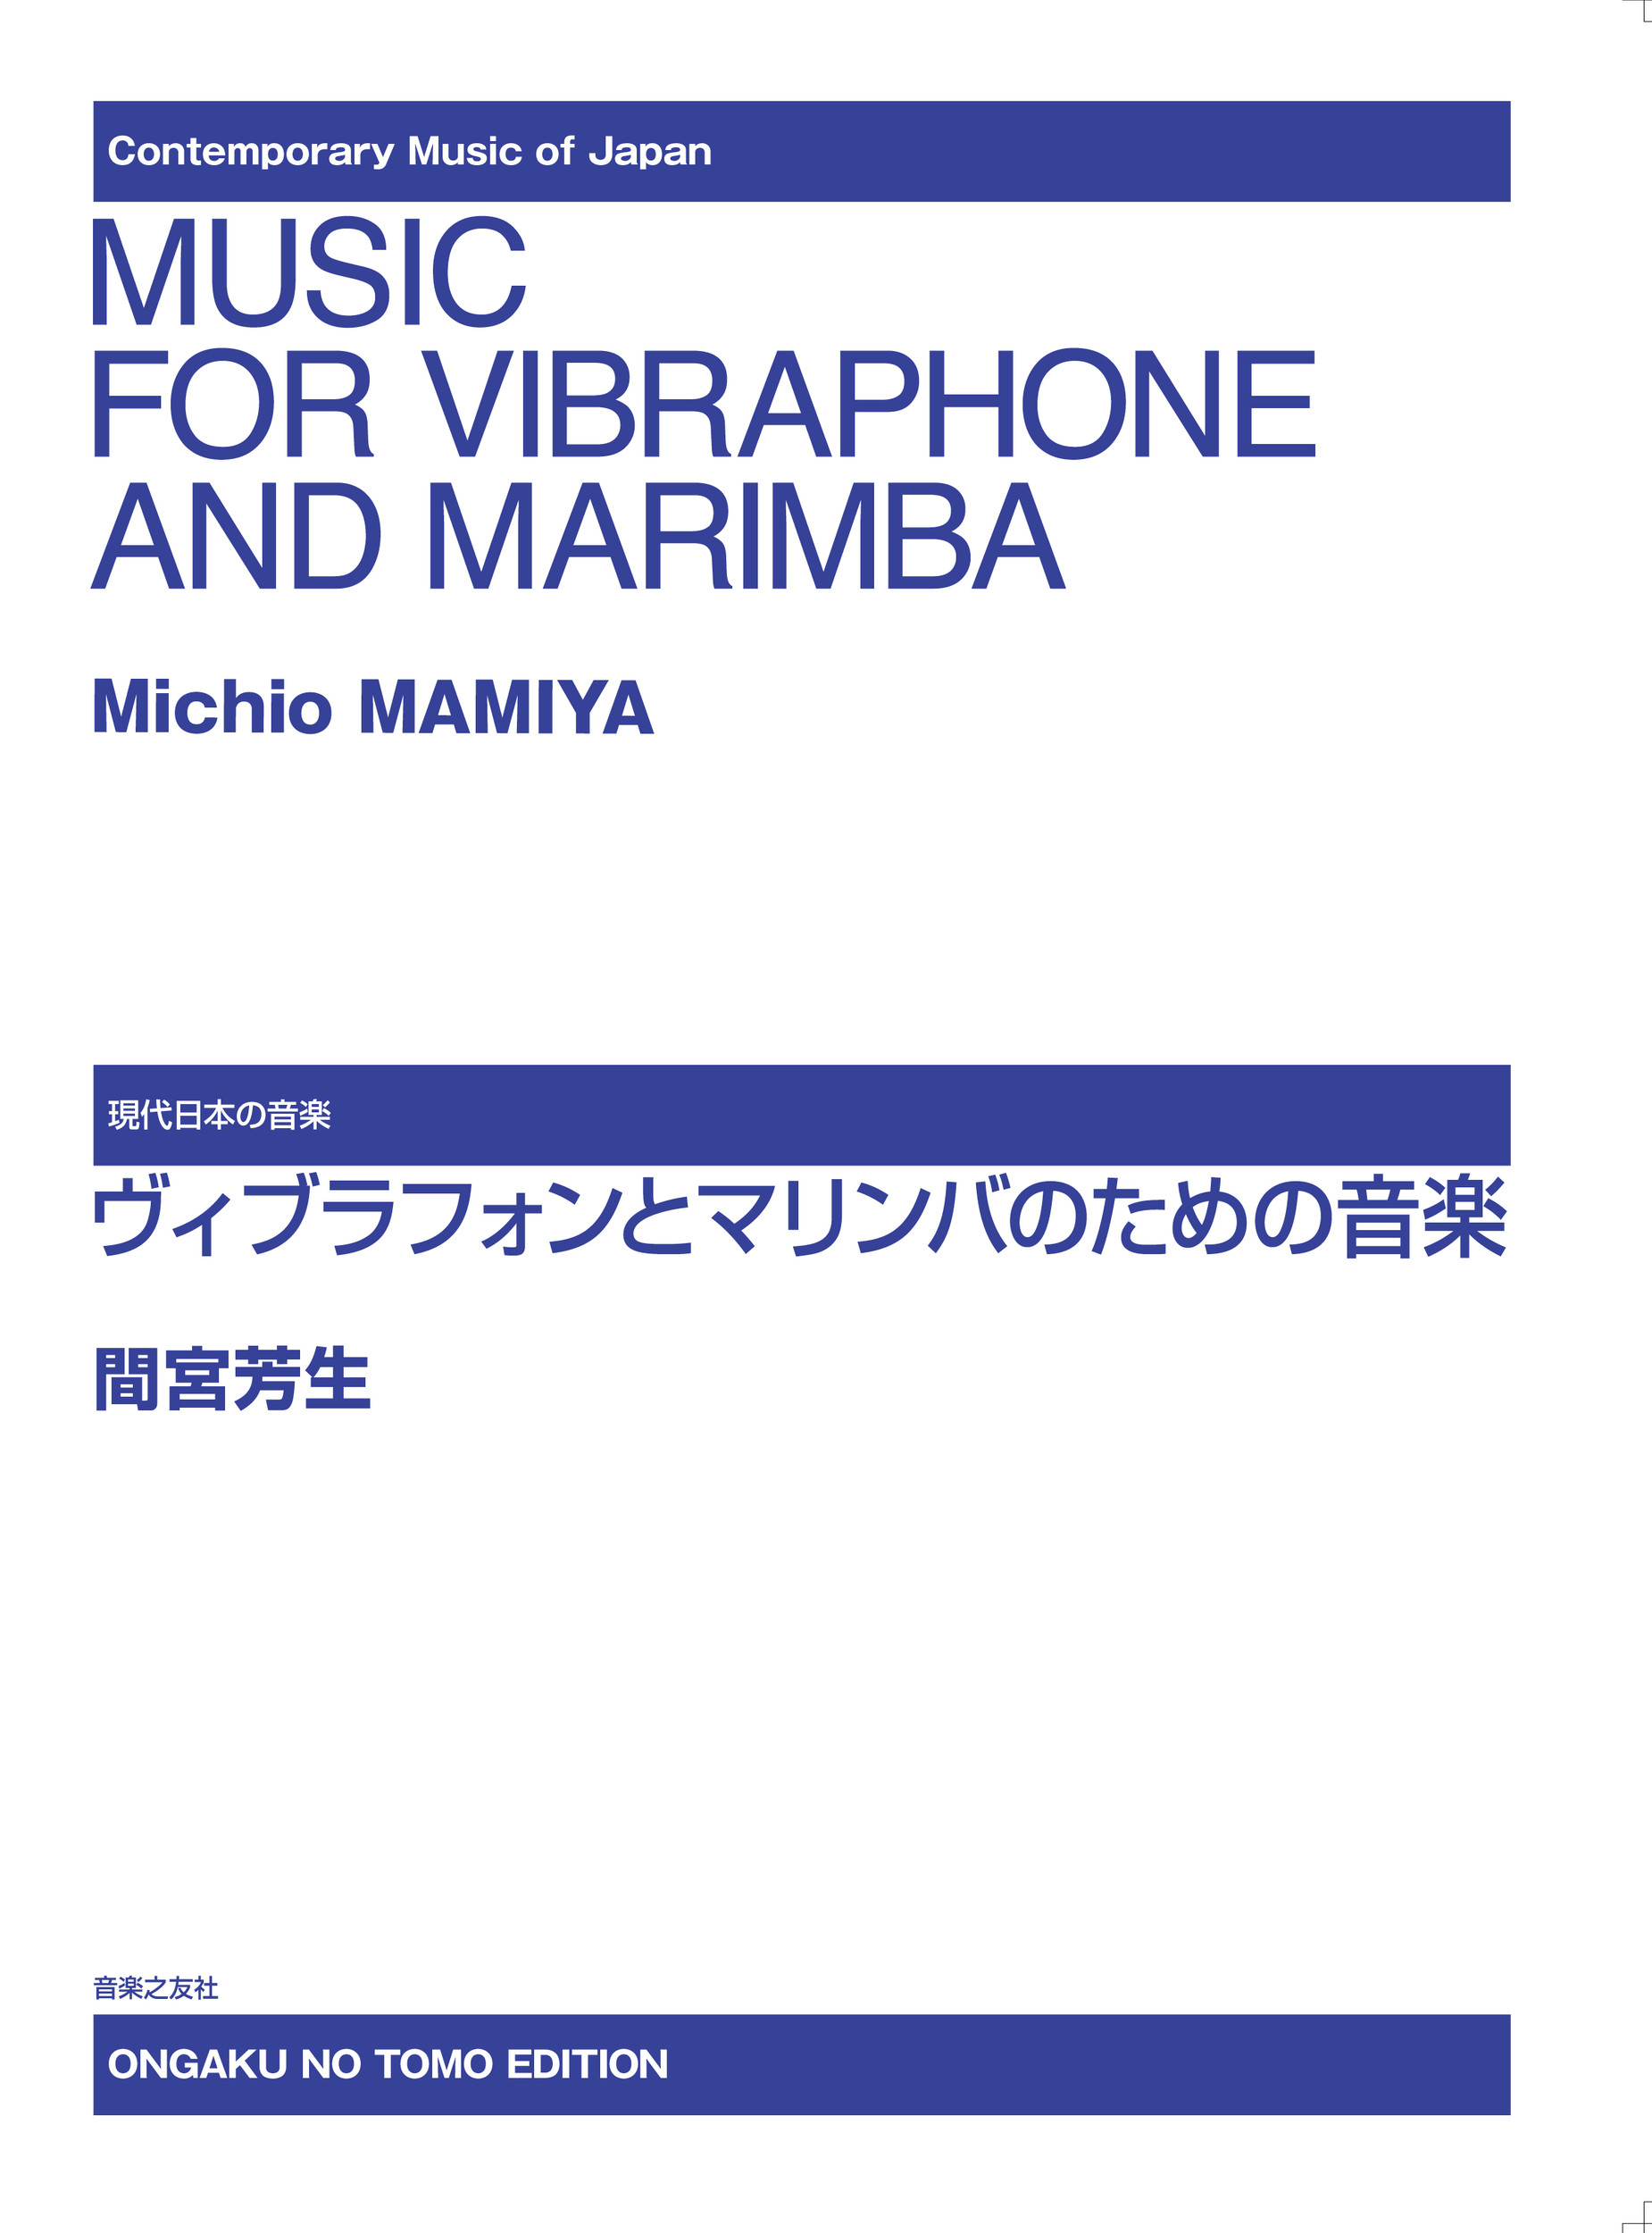 ヴィブラフォンとマリンバのための音楽の商品画像